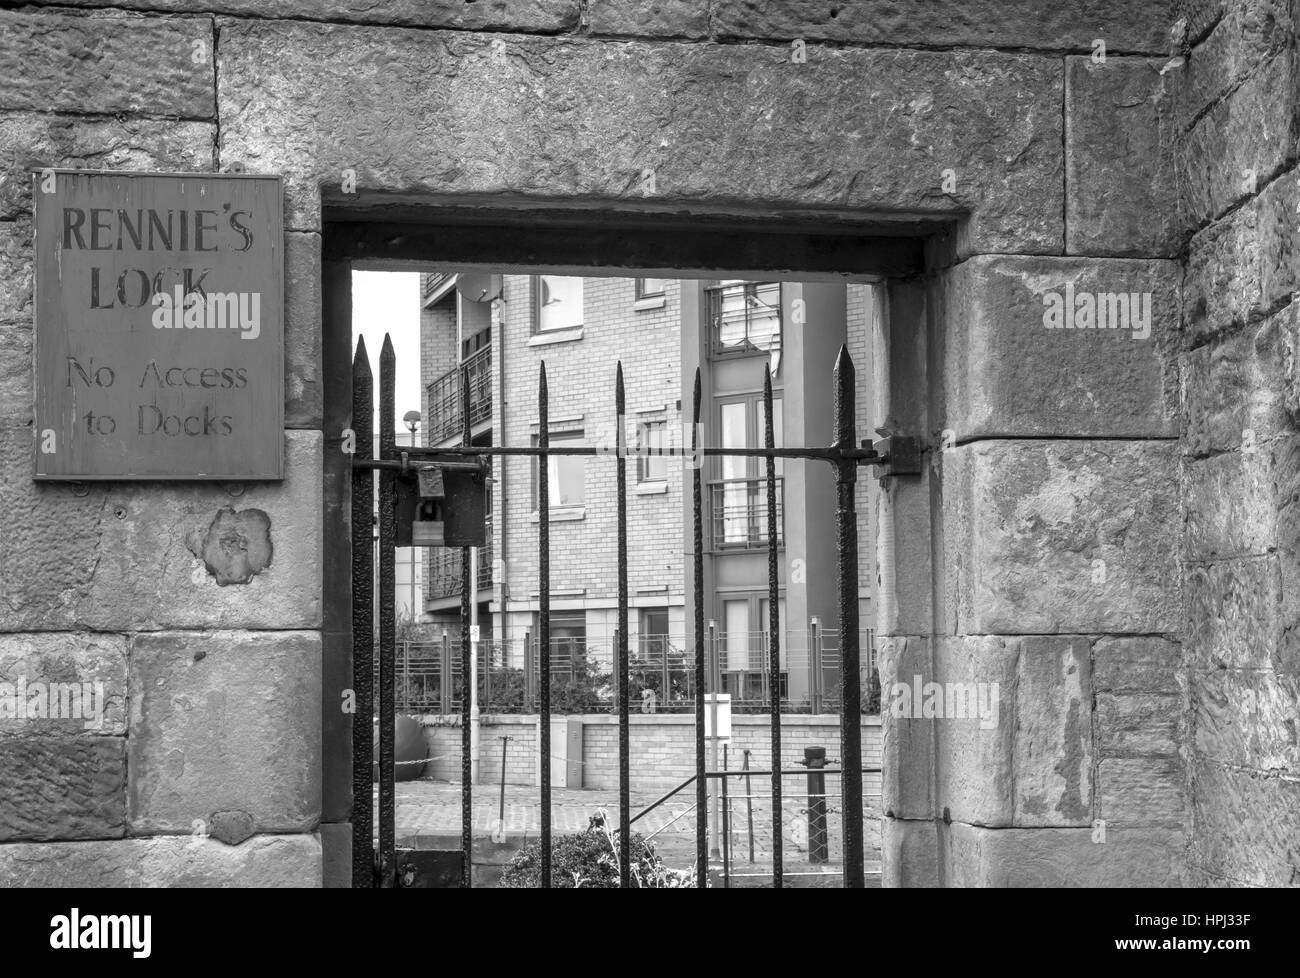 Vecchio cancello in ferro battuto con vecchio cartello per Rennie's Lock, Leith Harbour, Edimburgo, Scozia, presso l'ex terminal dei traghetti Leith, Regno Unito Foto Stock